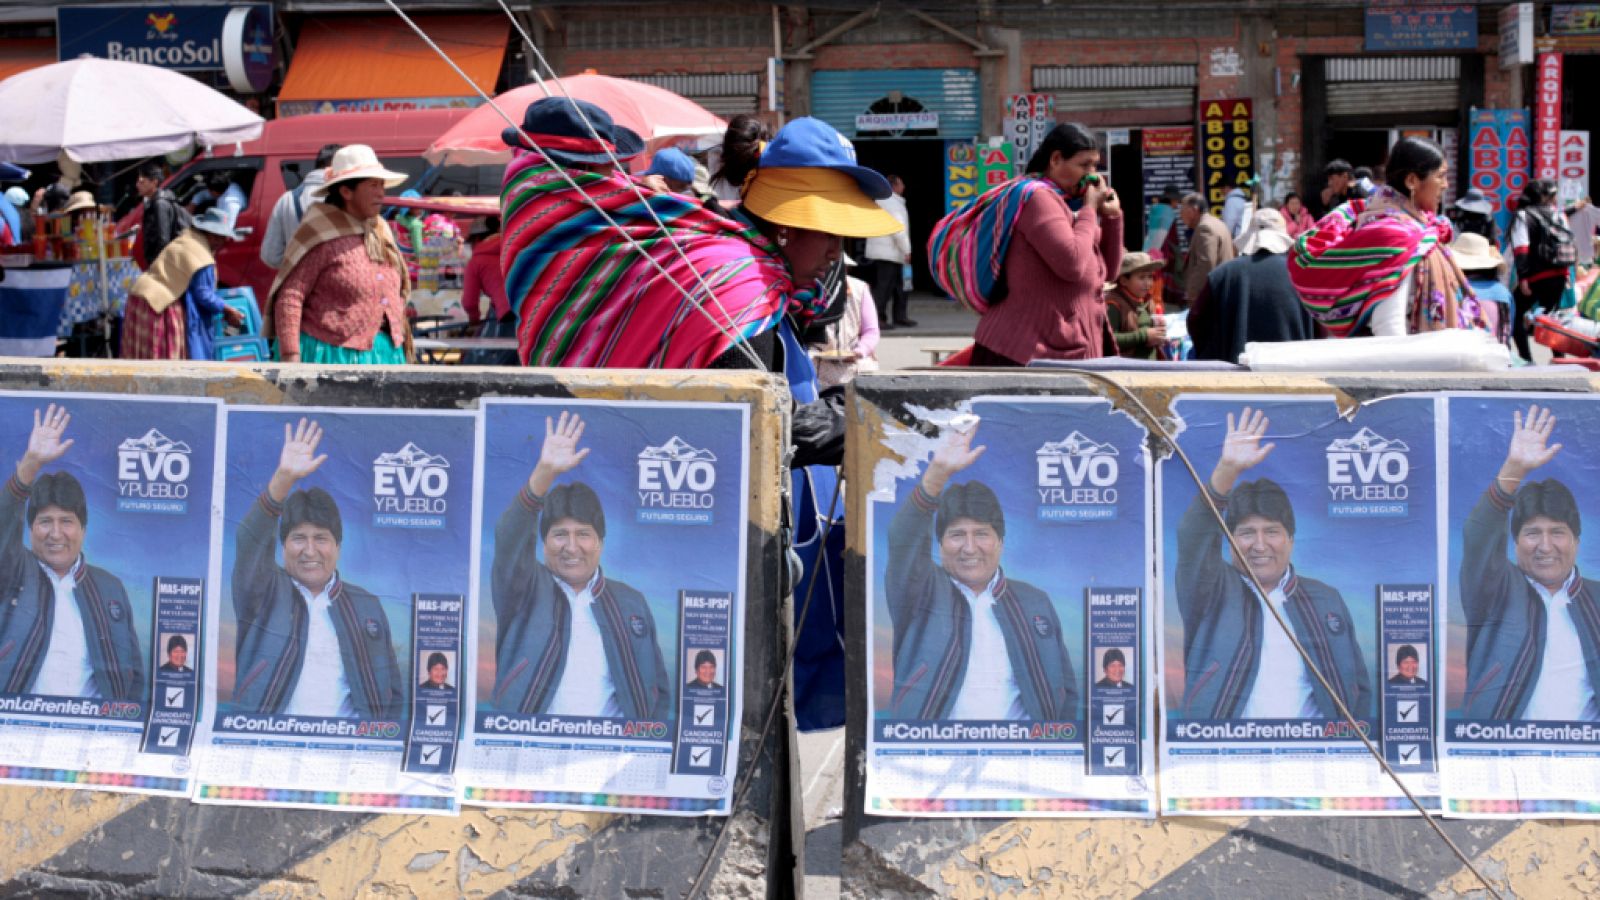  Cinco continentes - Evo Morales hasta 2025